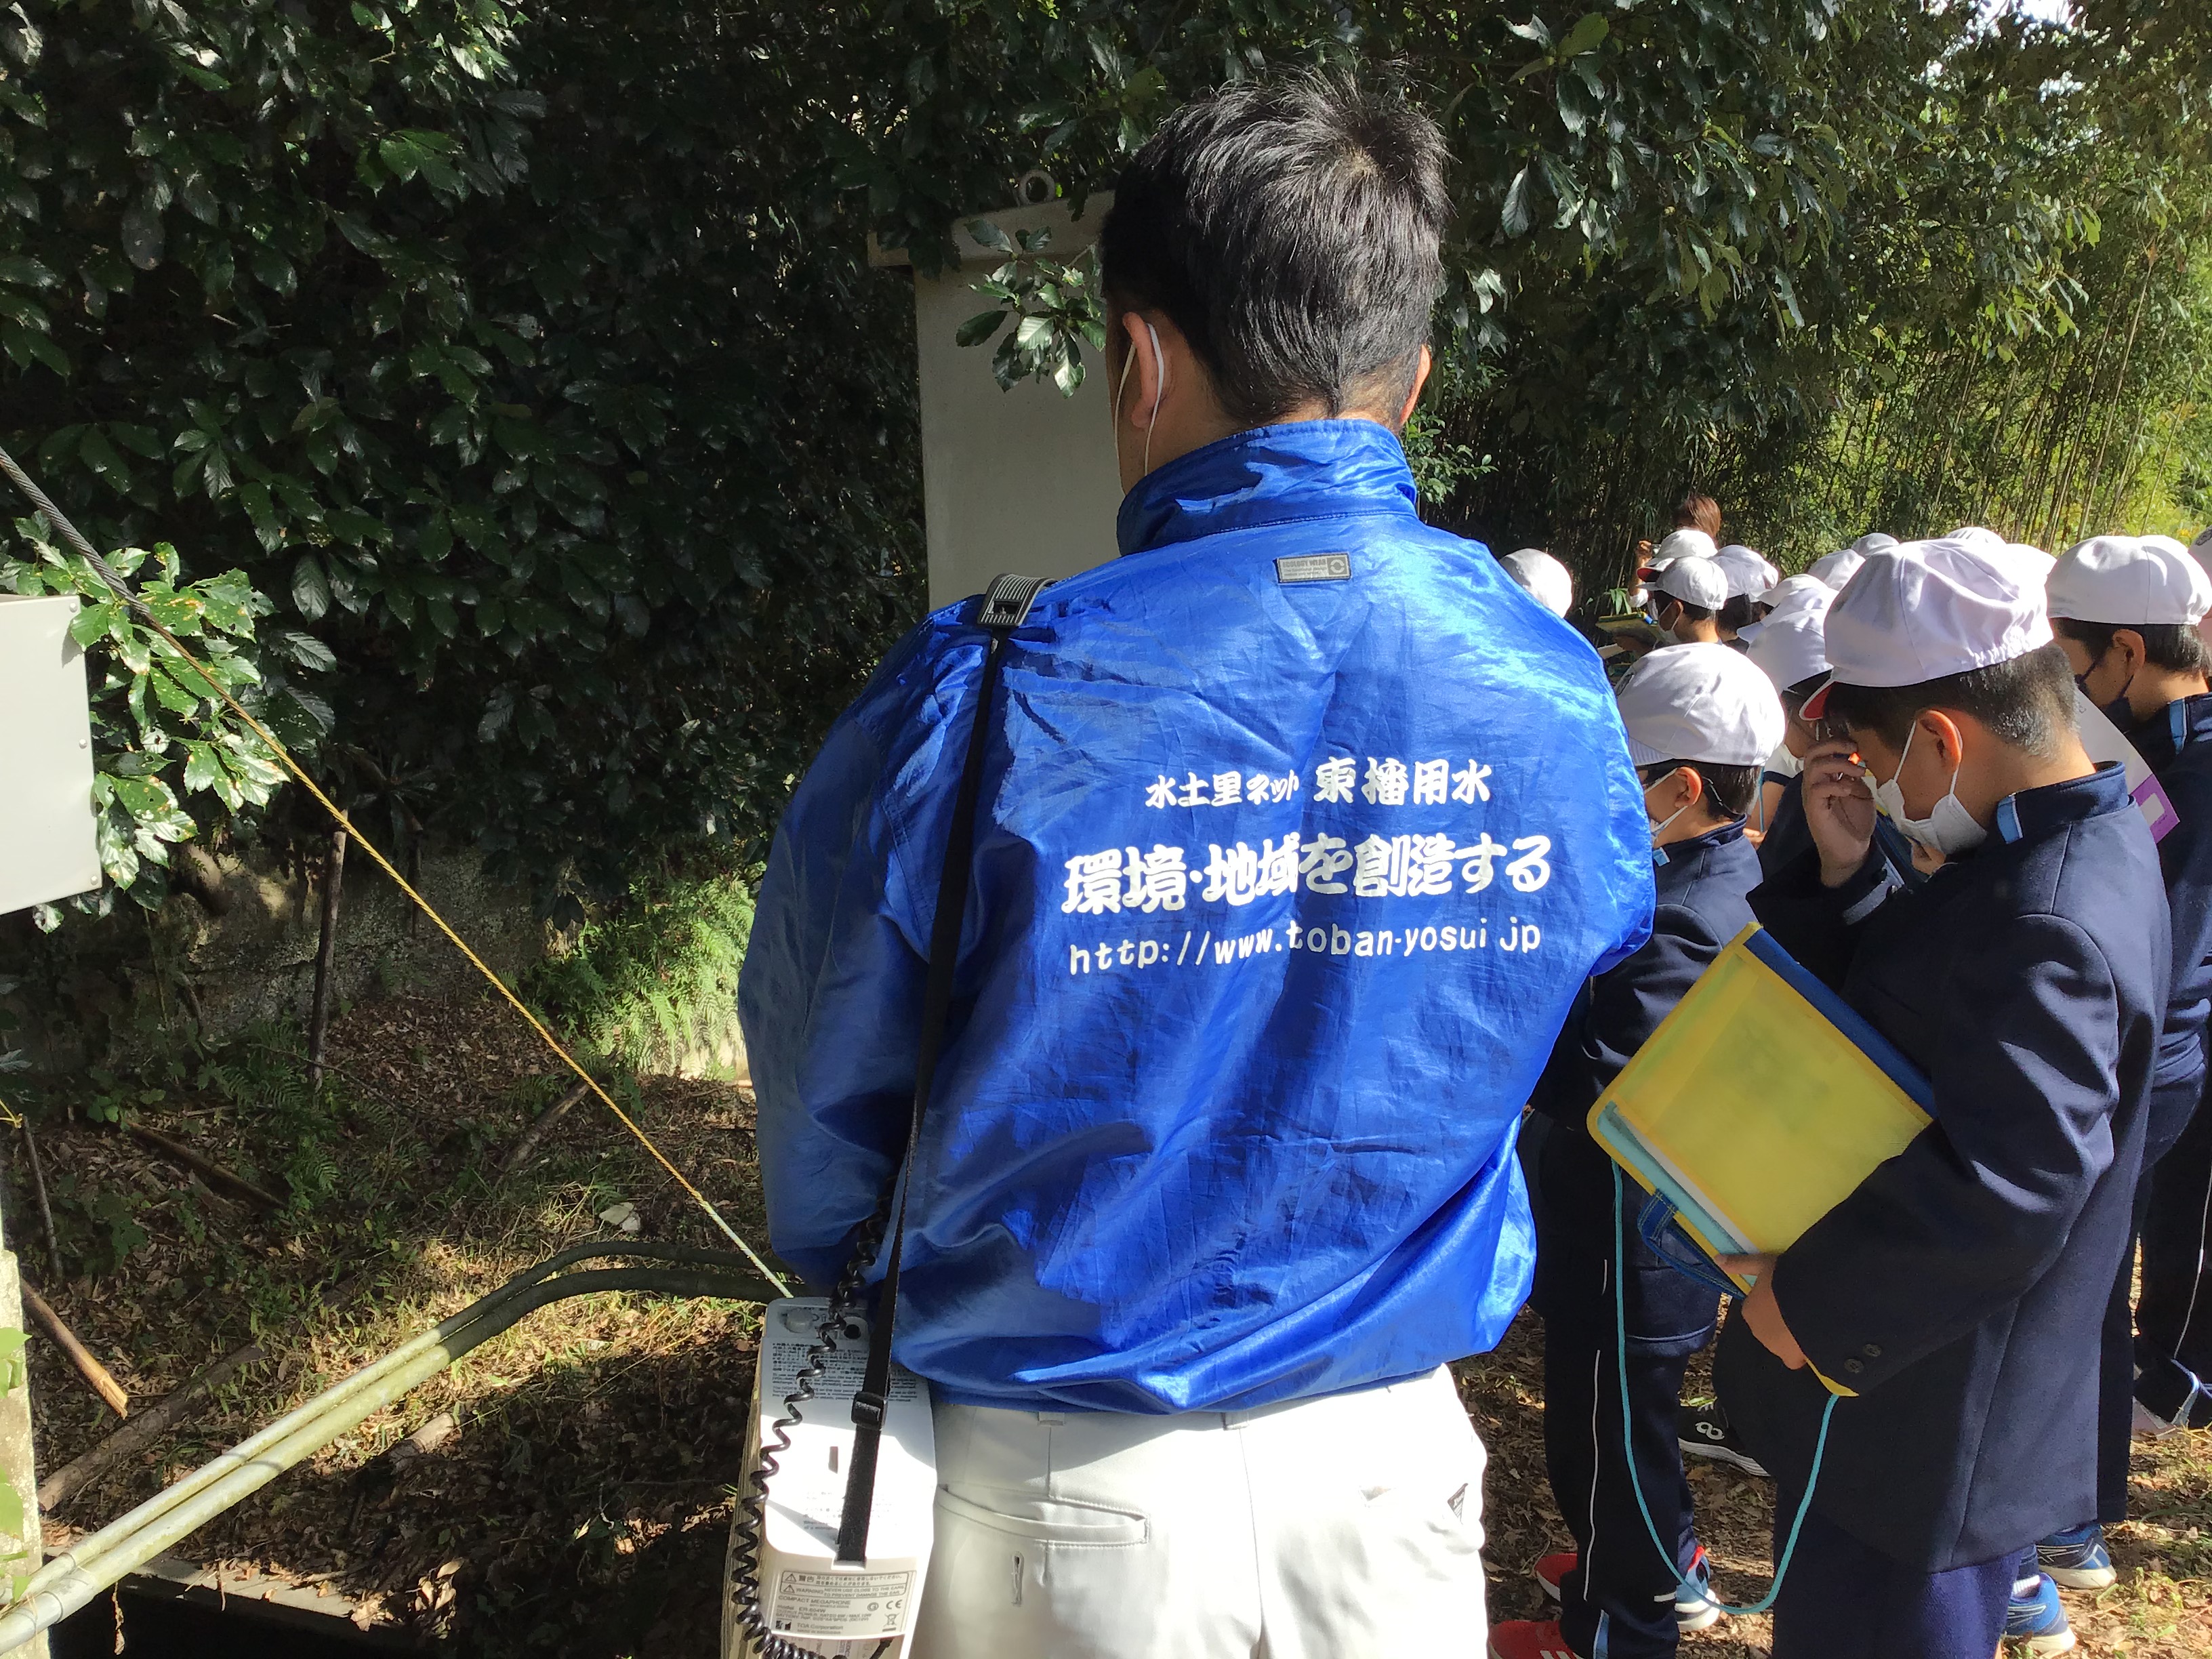 東播用水土地改良区の木村さん(青色ジャンパー)が淡河頭首工の説明をして頂きました。